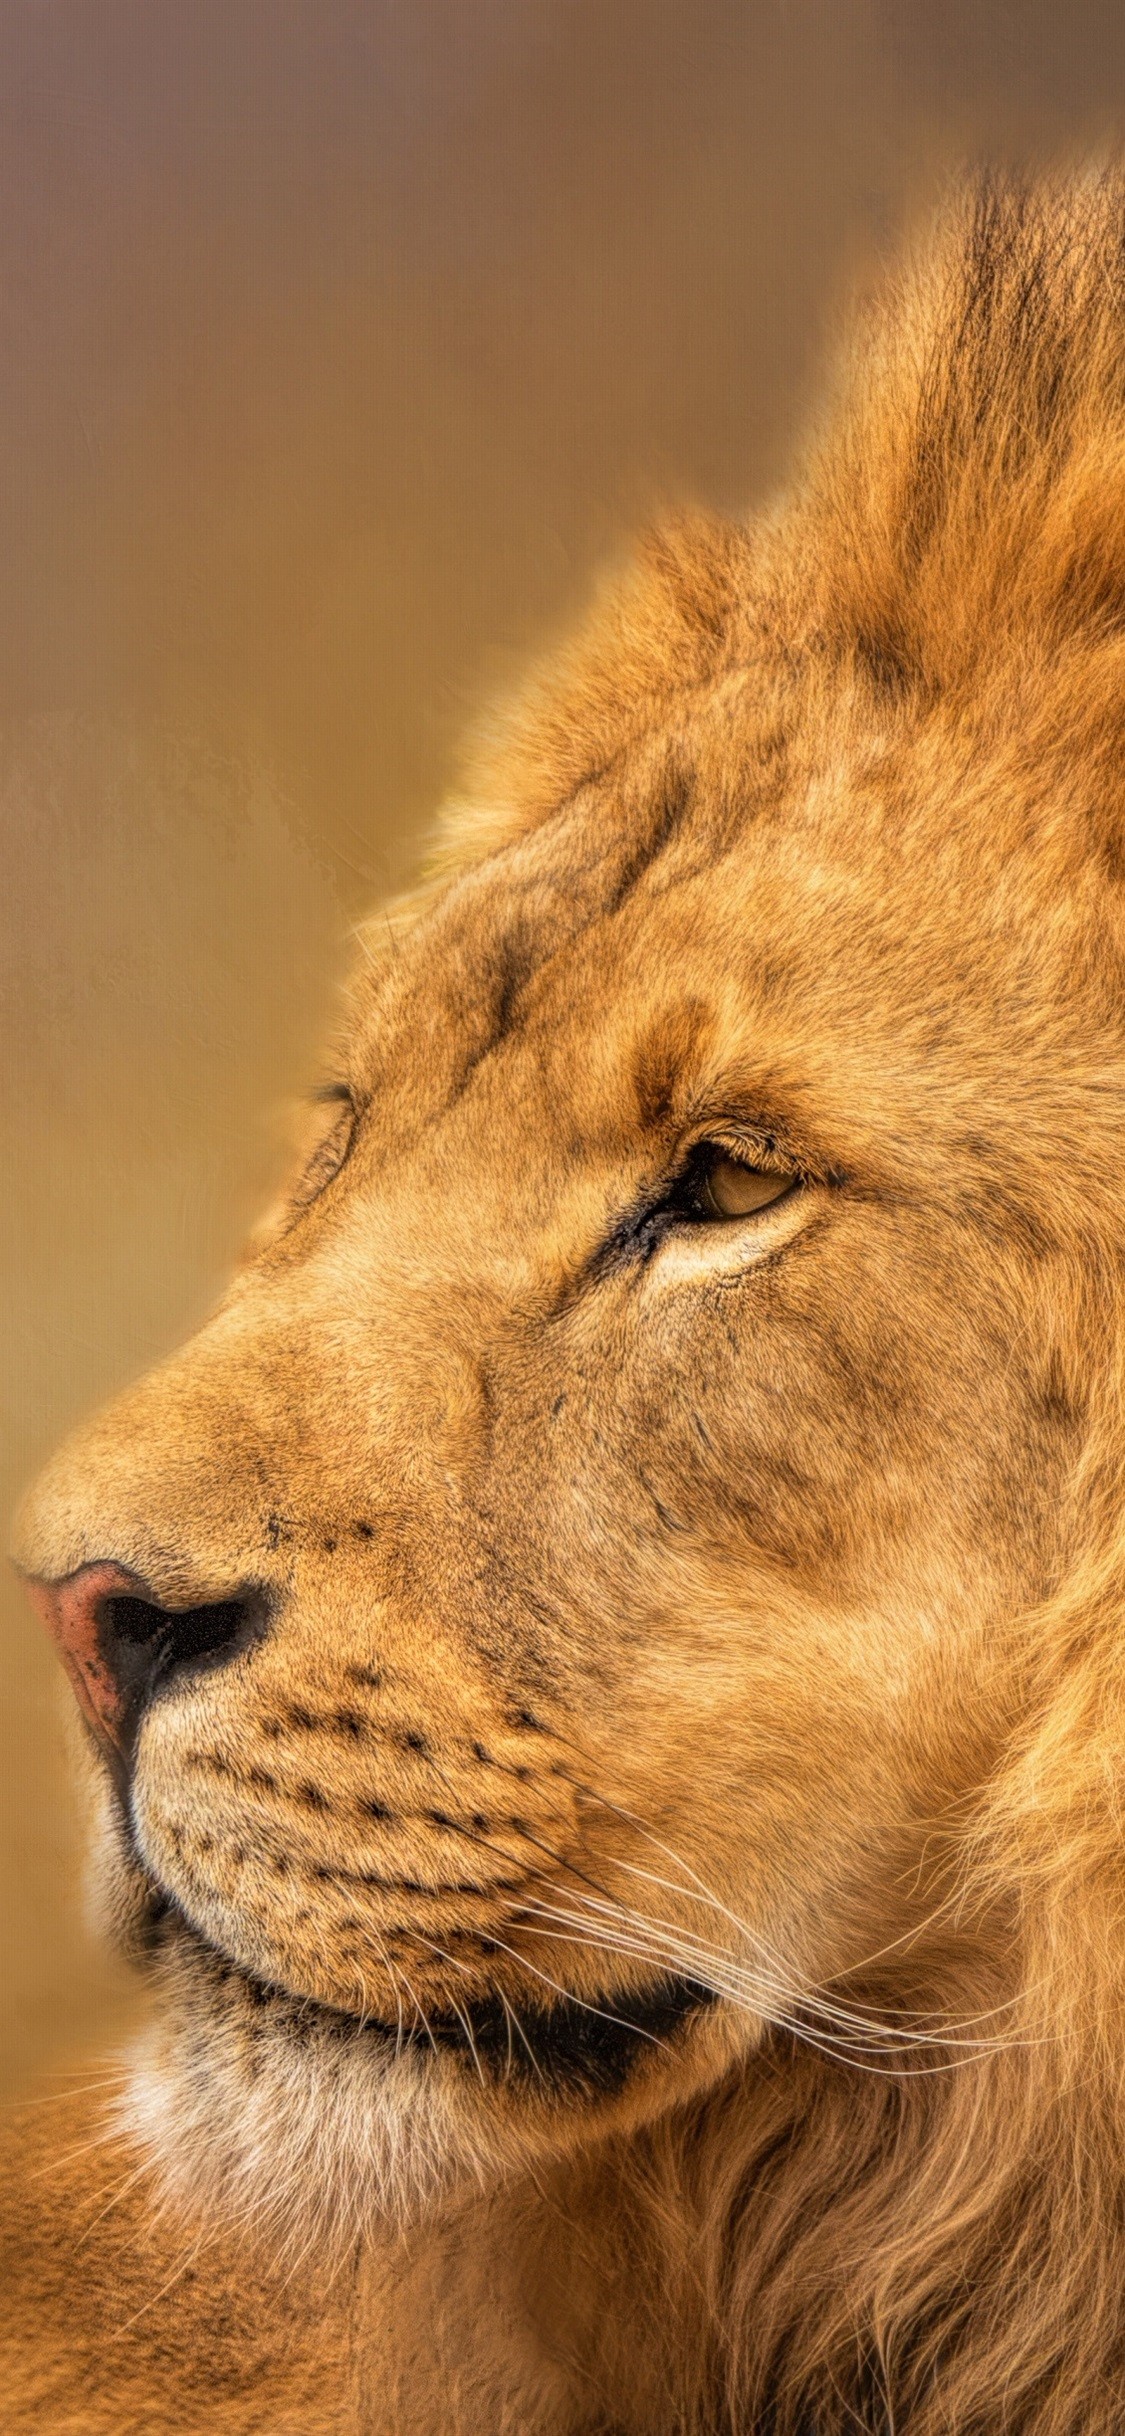 キング壁紙iphone,野生動物,ライオン,陸生動物,ネコ科,マサイライオン